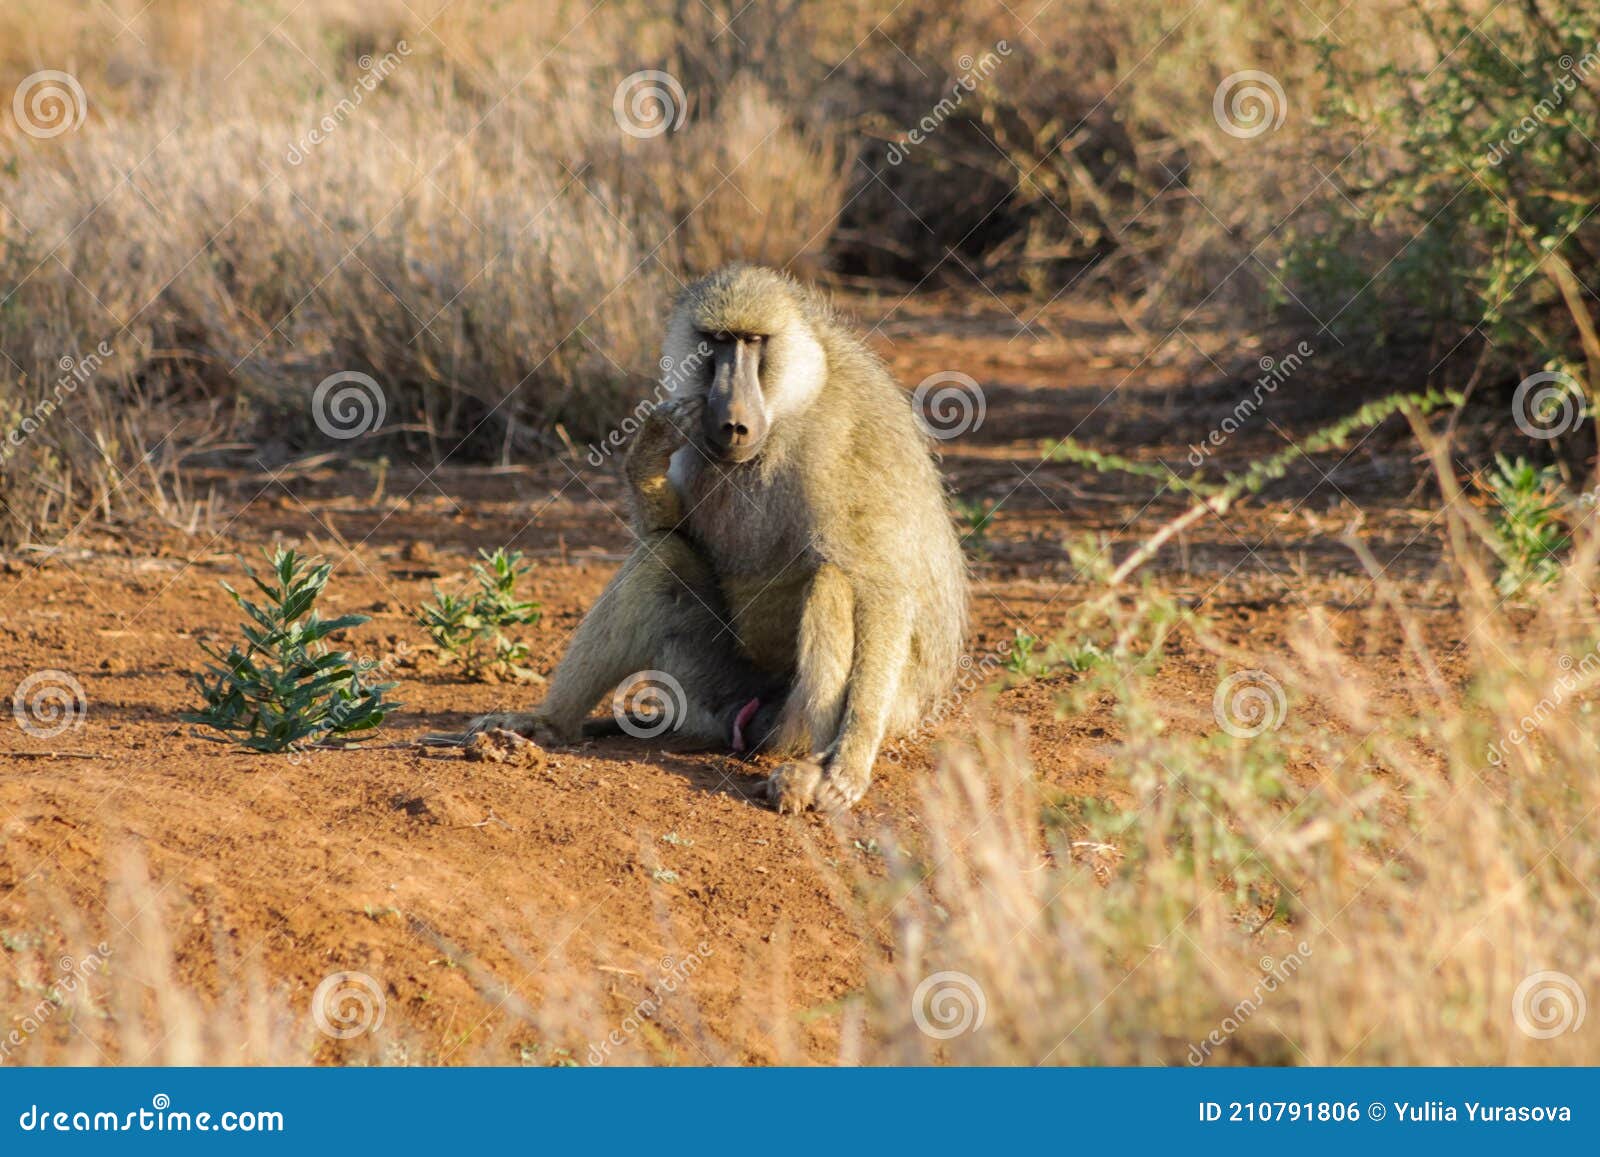 wild monkey baboon